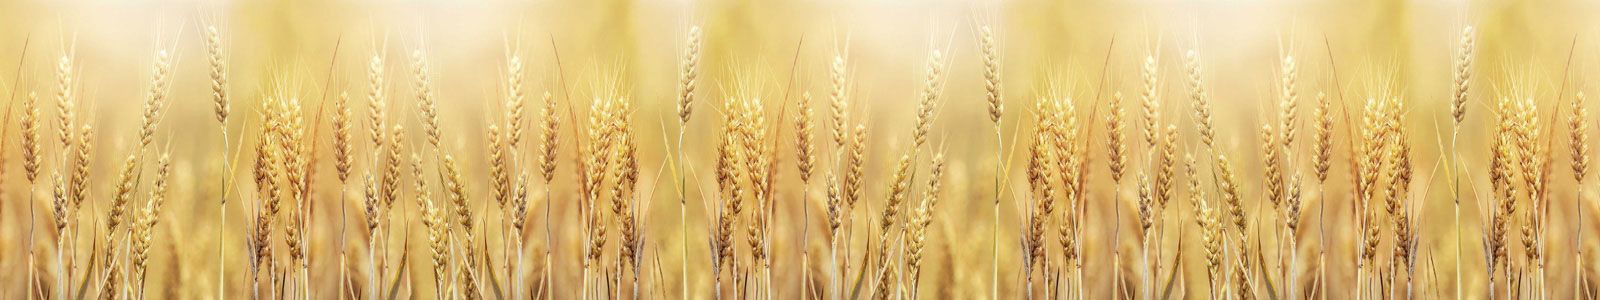 №6146 - Золотистая пшеница